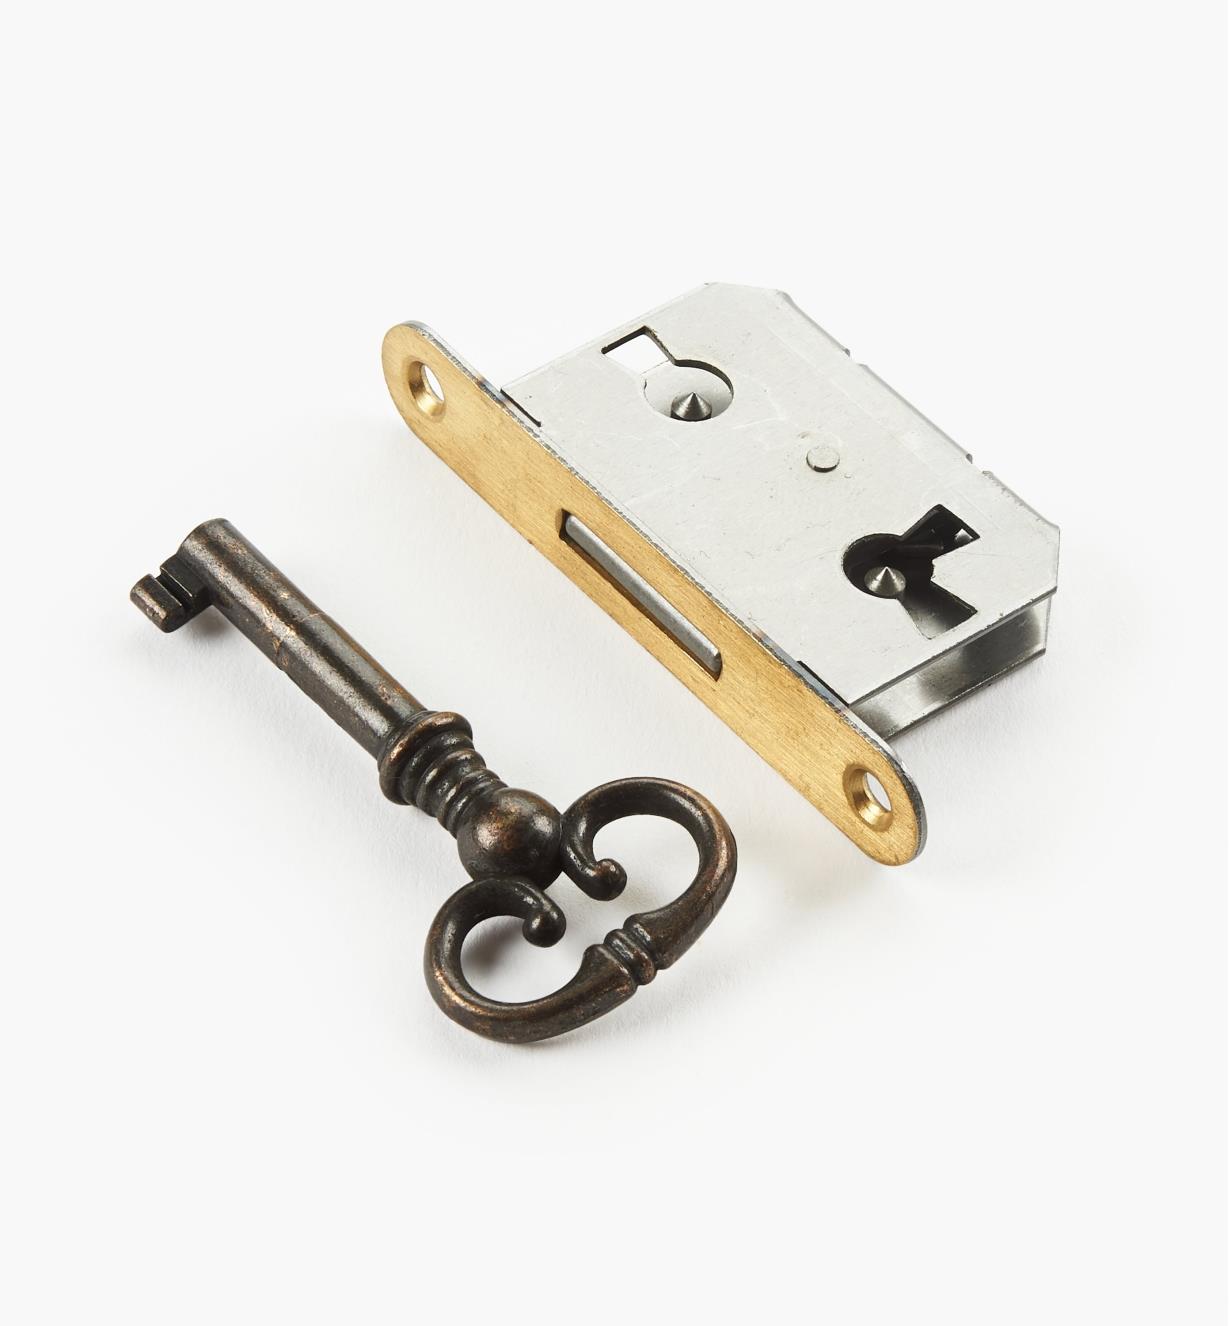 00N2516 - 5/8" Standard Mortise Lock, each